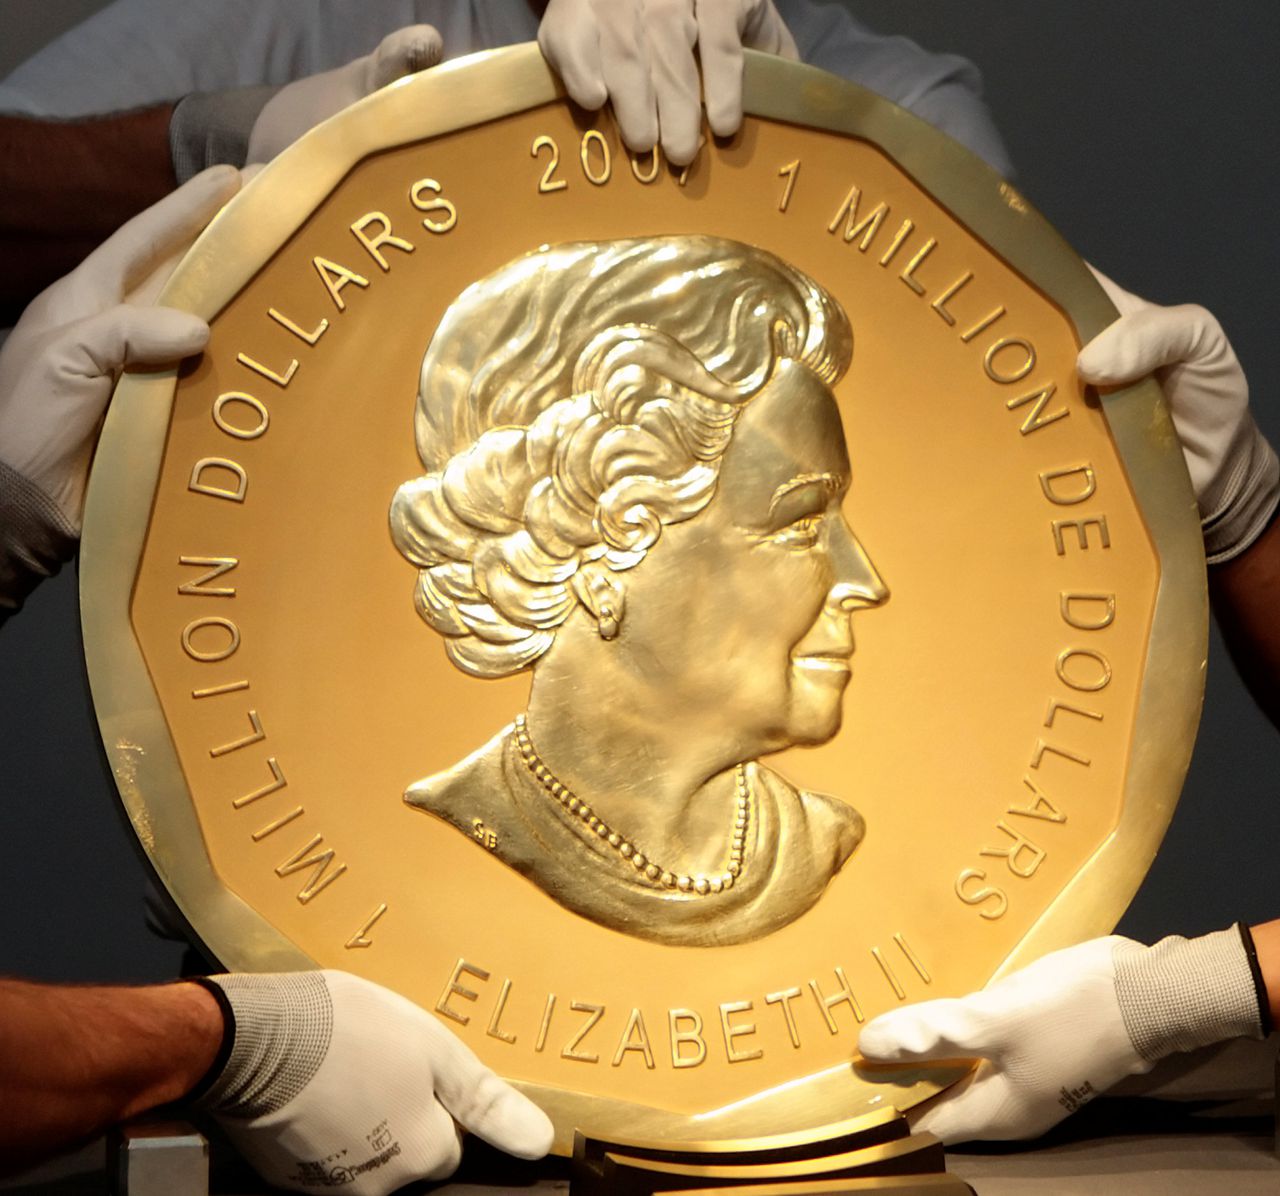 onze ring element Gouden munt van 100 kilo gestolen uit Berlijns museum - NRC